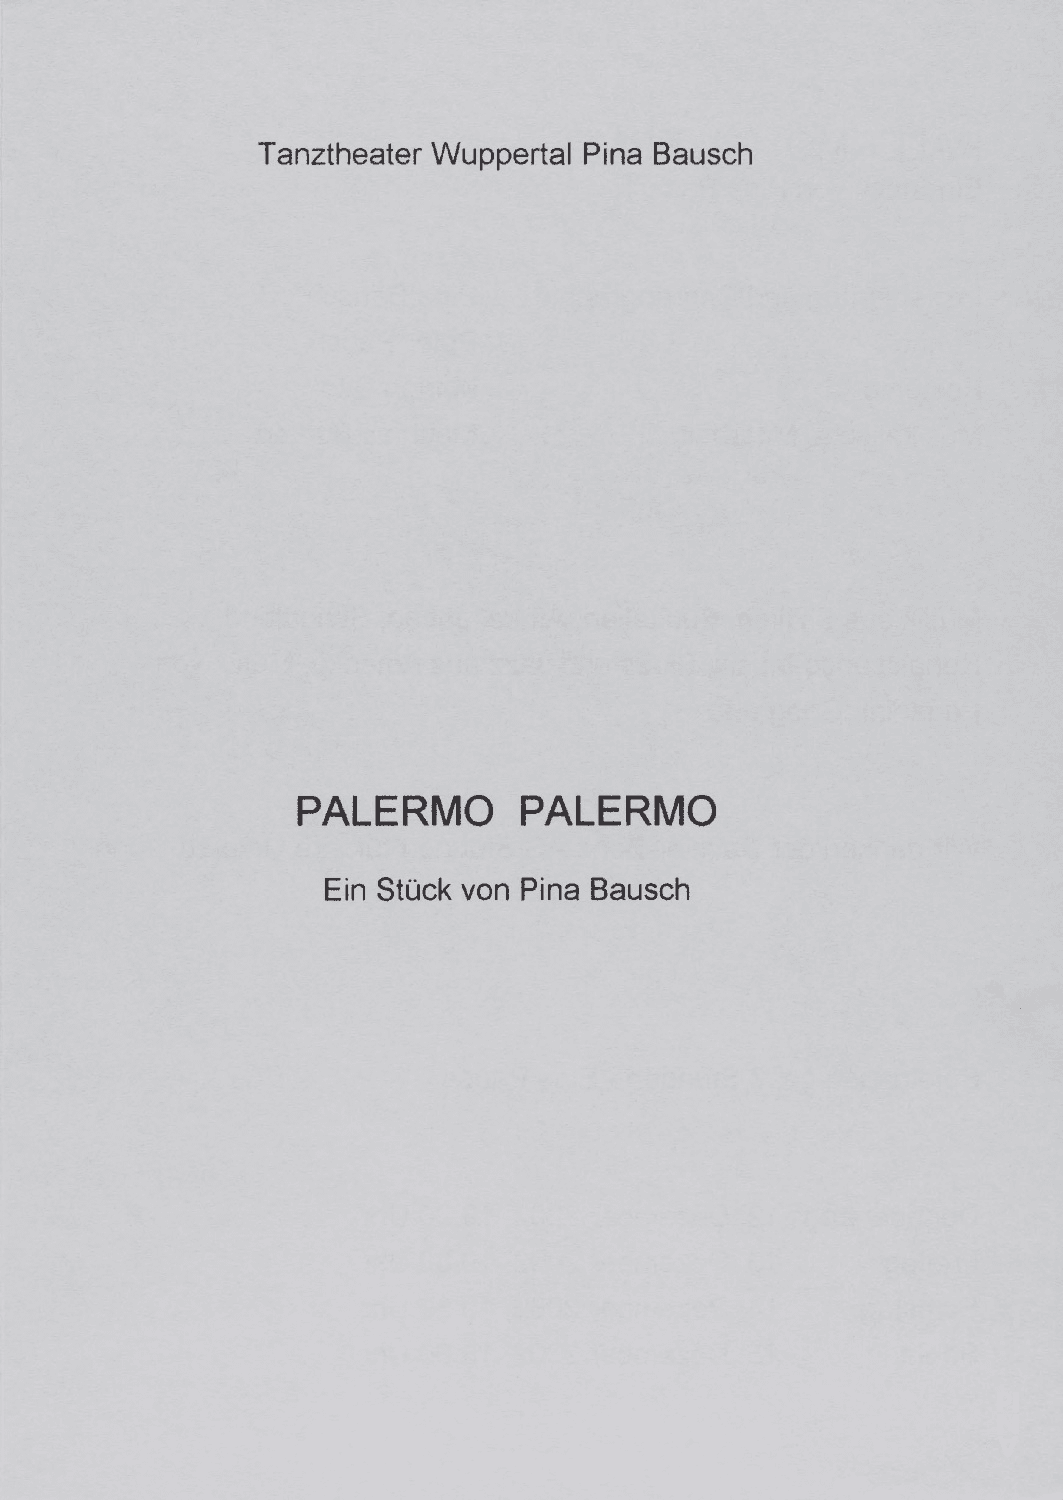 Abendzettel zu „Palermo Palermo“ von Pina Bausch mit Tanztheater Wuppertal in Wuppertal, 12.12.2002–15.12.2002